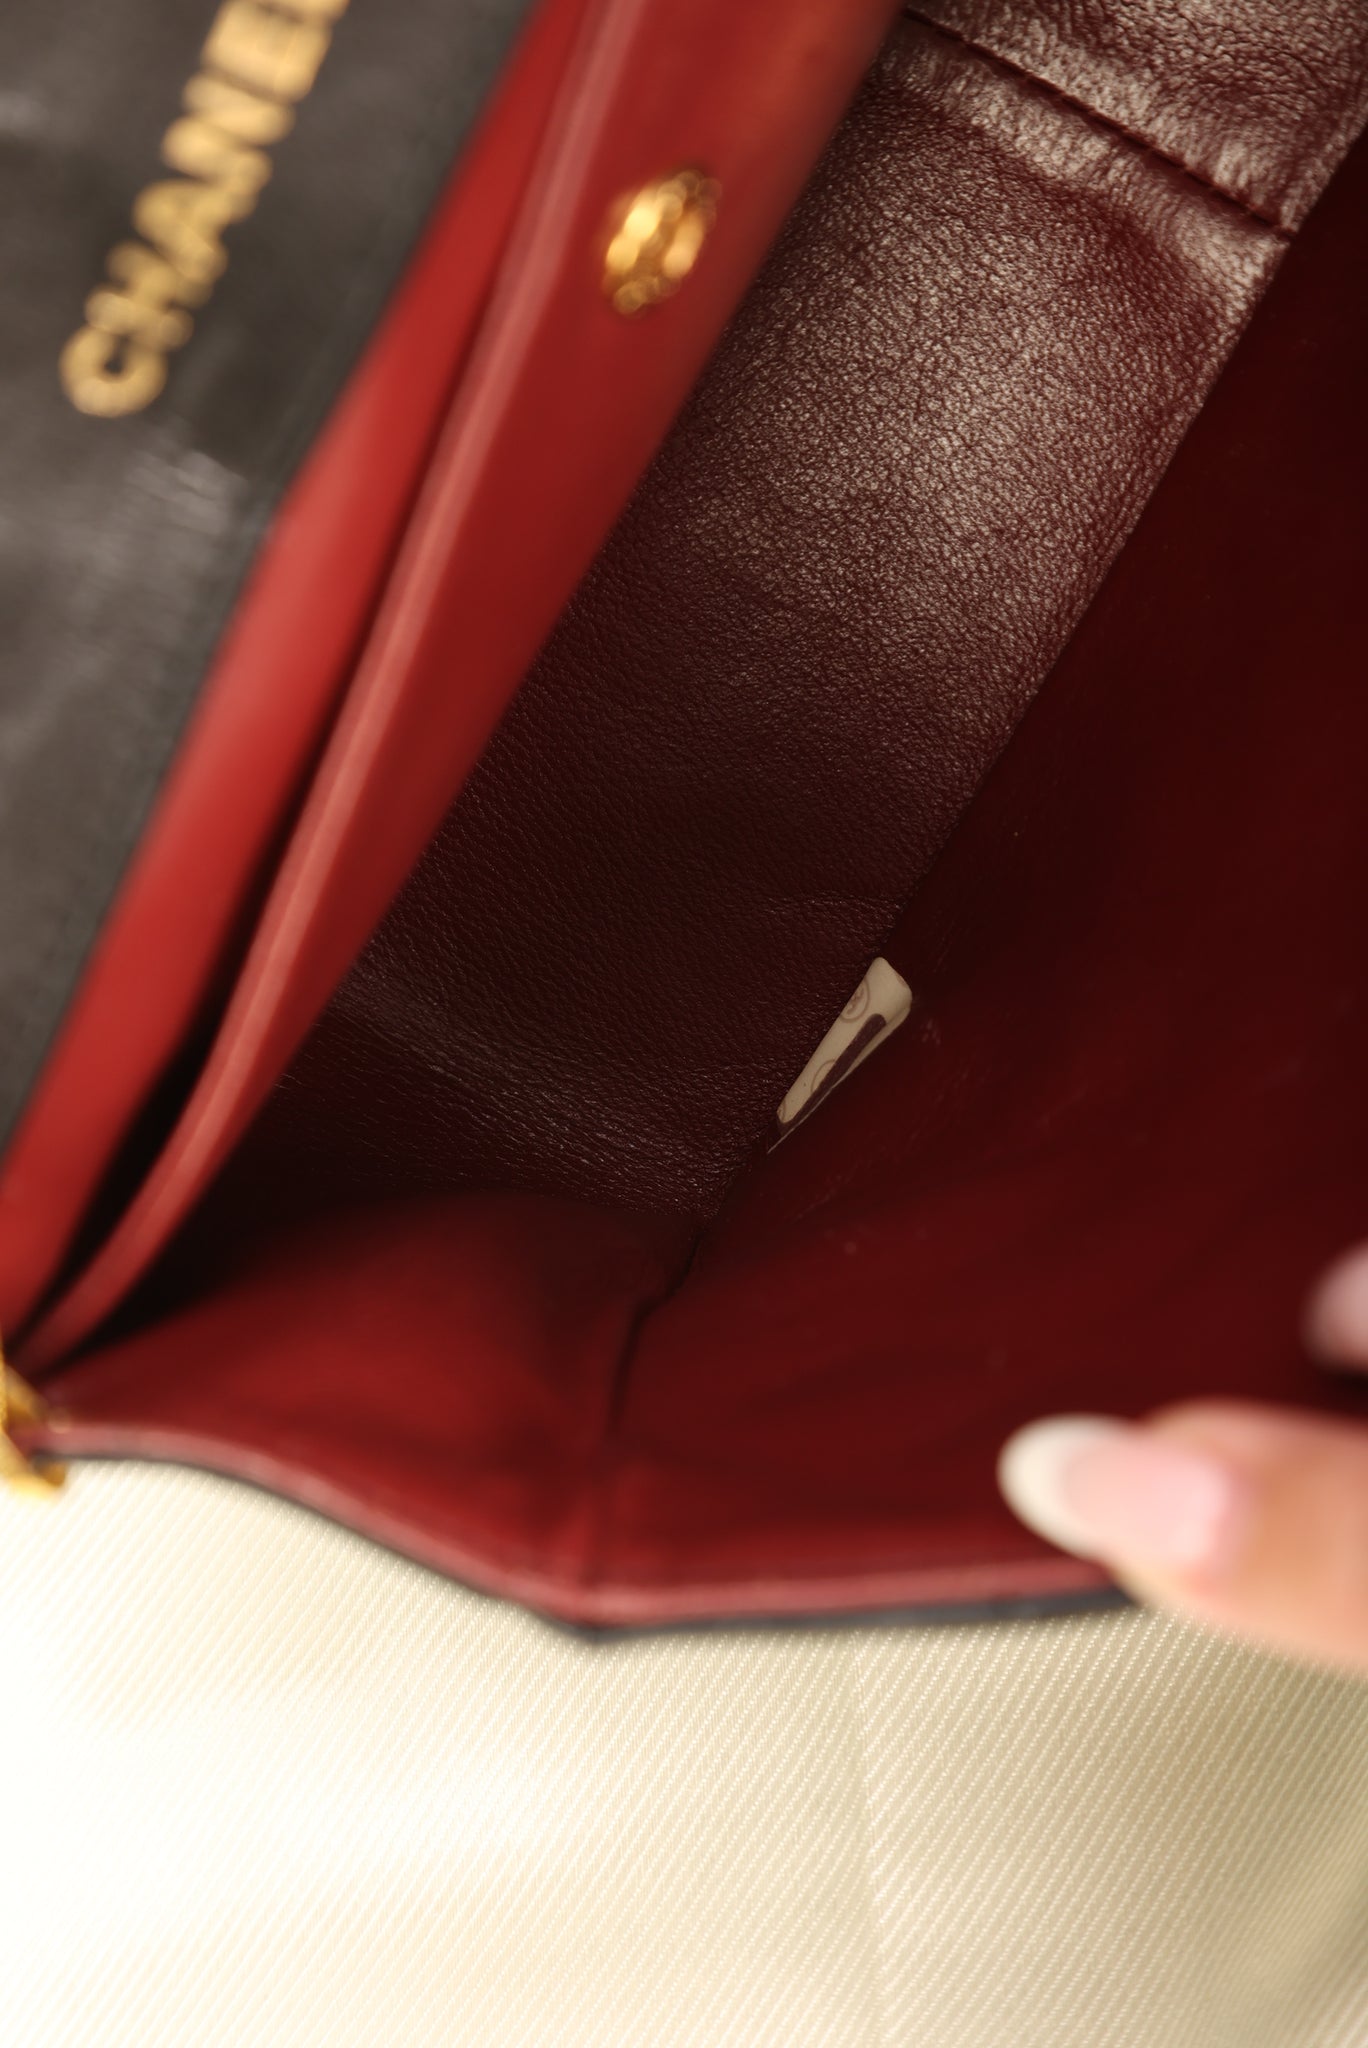 Rare Chanel Lambskin Wave Flap Bag – SFN